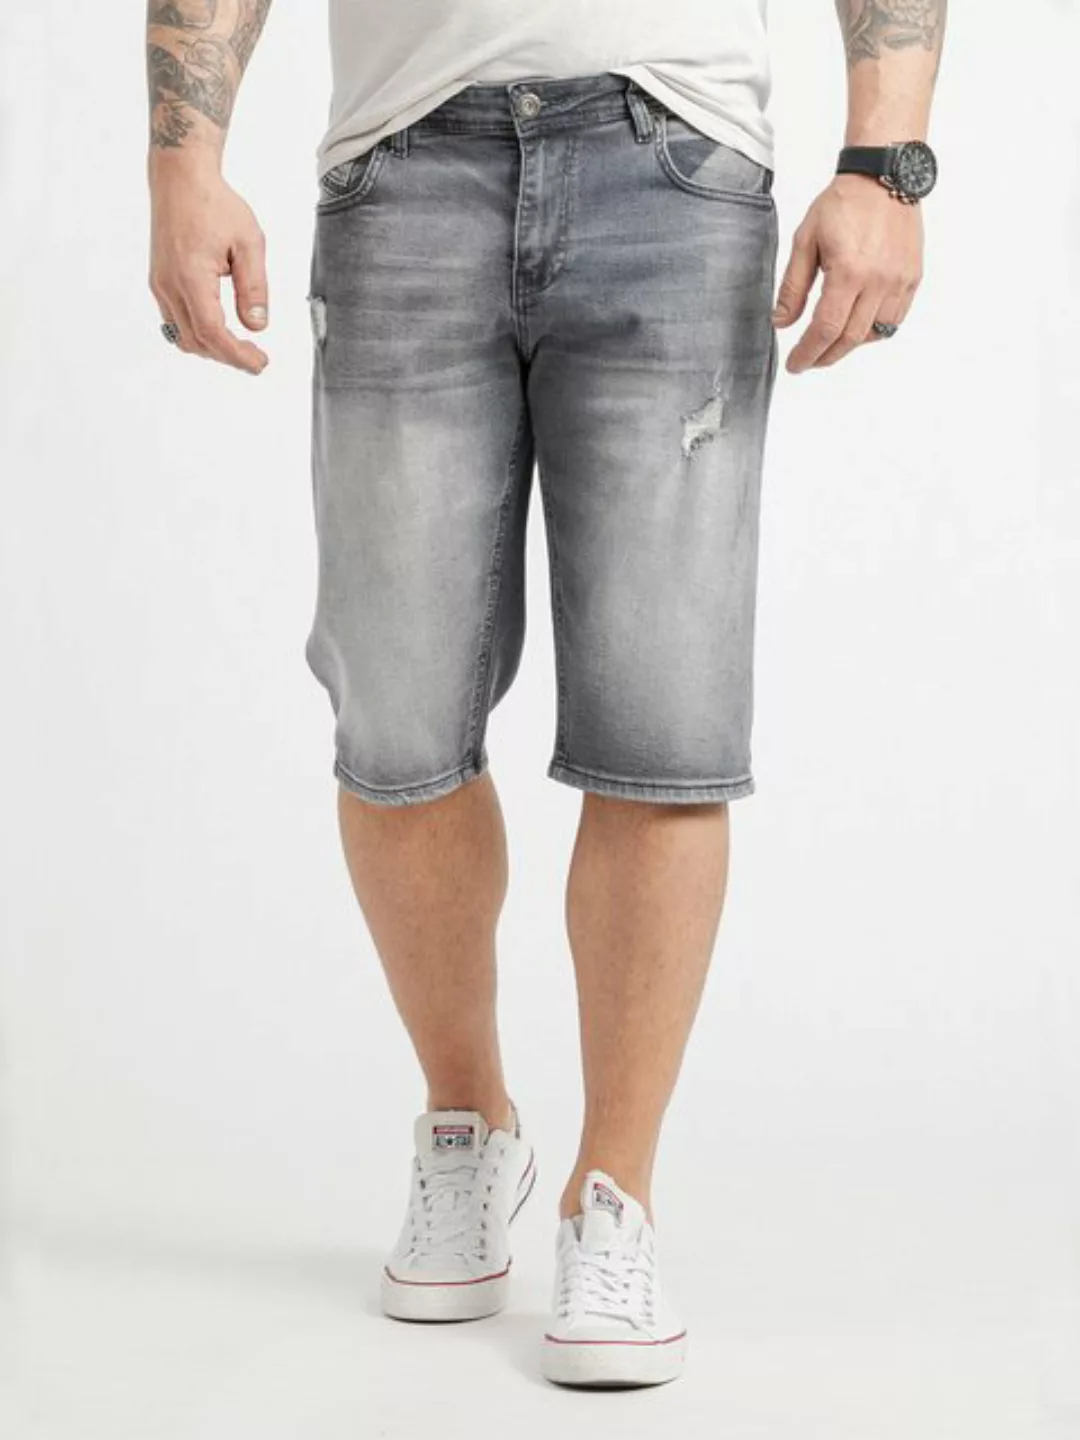 Rock Creek Bermudas Herren Shorts Jeansshorts Denim Hellblau RC-2426 günstig online kaufen